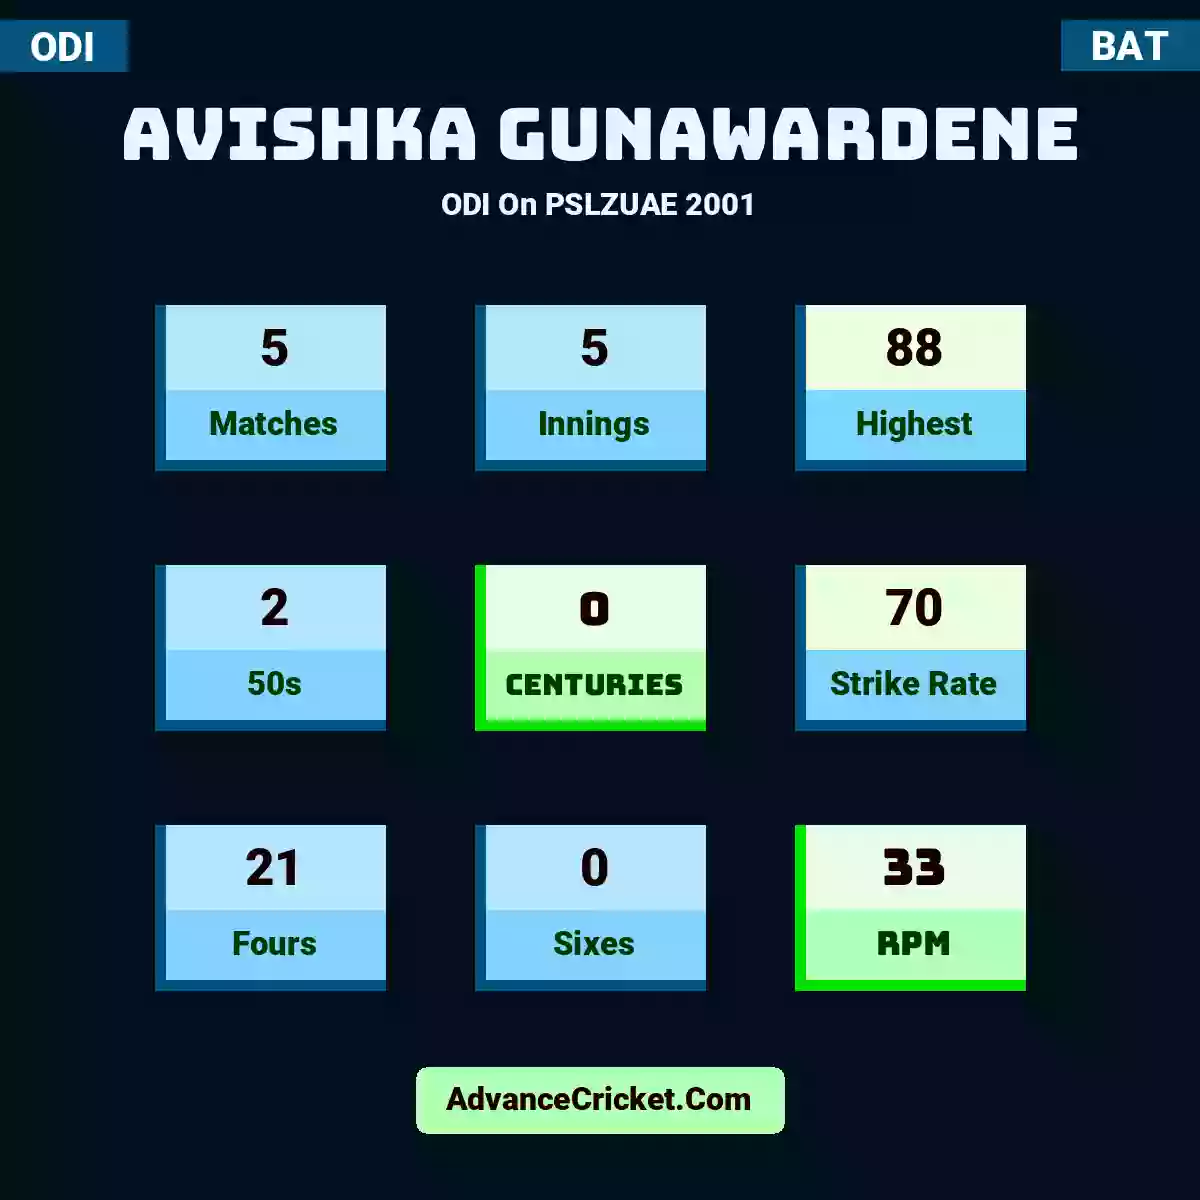 Avishka Gunawardene ODI  On PSLZUAE 2001, Avishka Gunawardene played 5 matches, scored 88 runs as highest, 2 half-centuries, and 0 centuries, with a strike rate of 70. A.Gunawardene hit 21 fours and 0 sixes, with an RPM of 33.